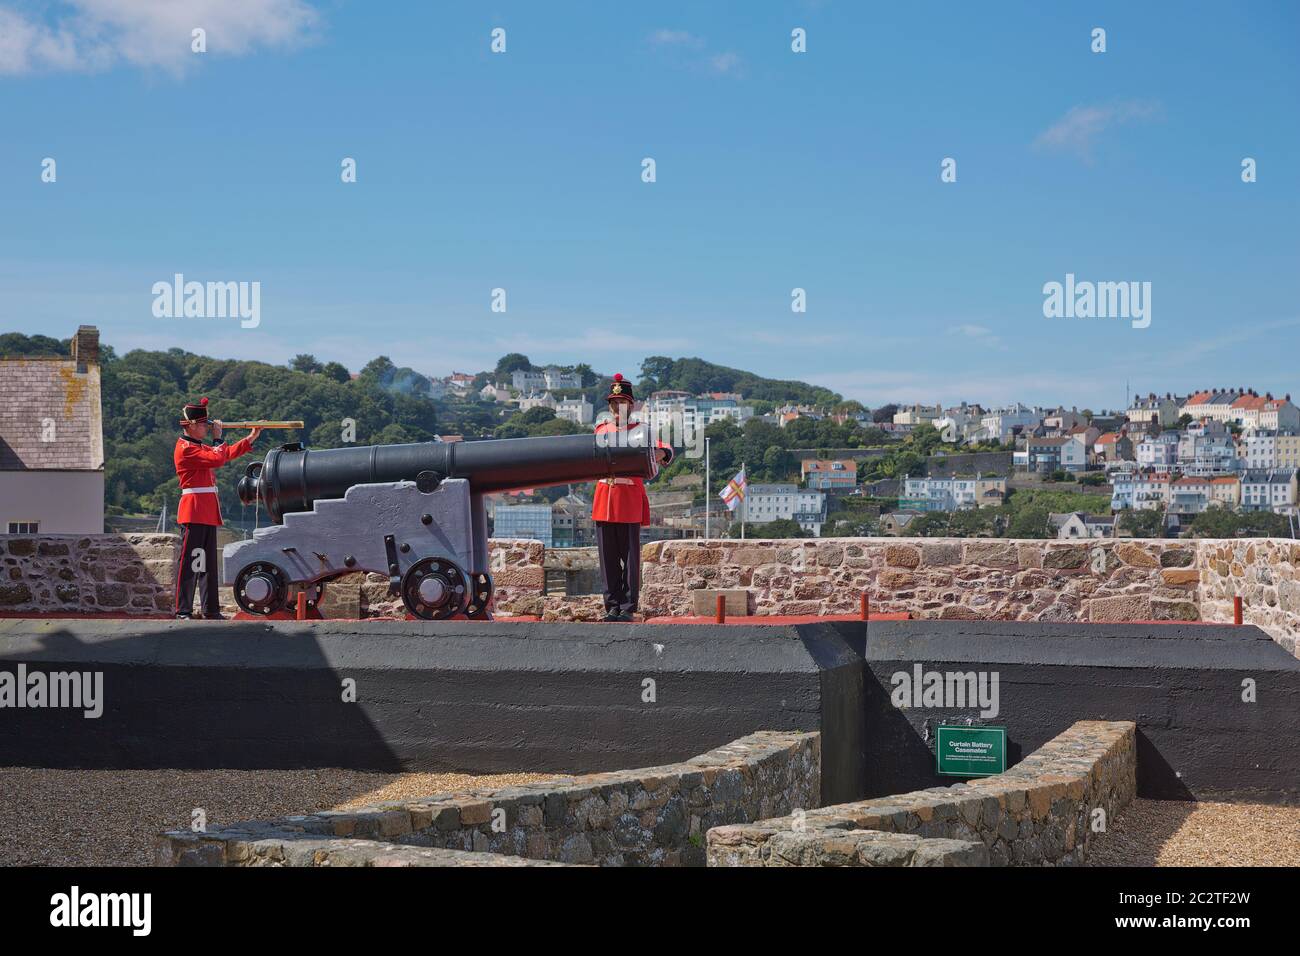 Guardie sparare la pistola di mezzogiorno giorno a Castle Cornet, San Pietro Porto, Guernsey, Isole del canale Foto Stock